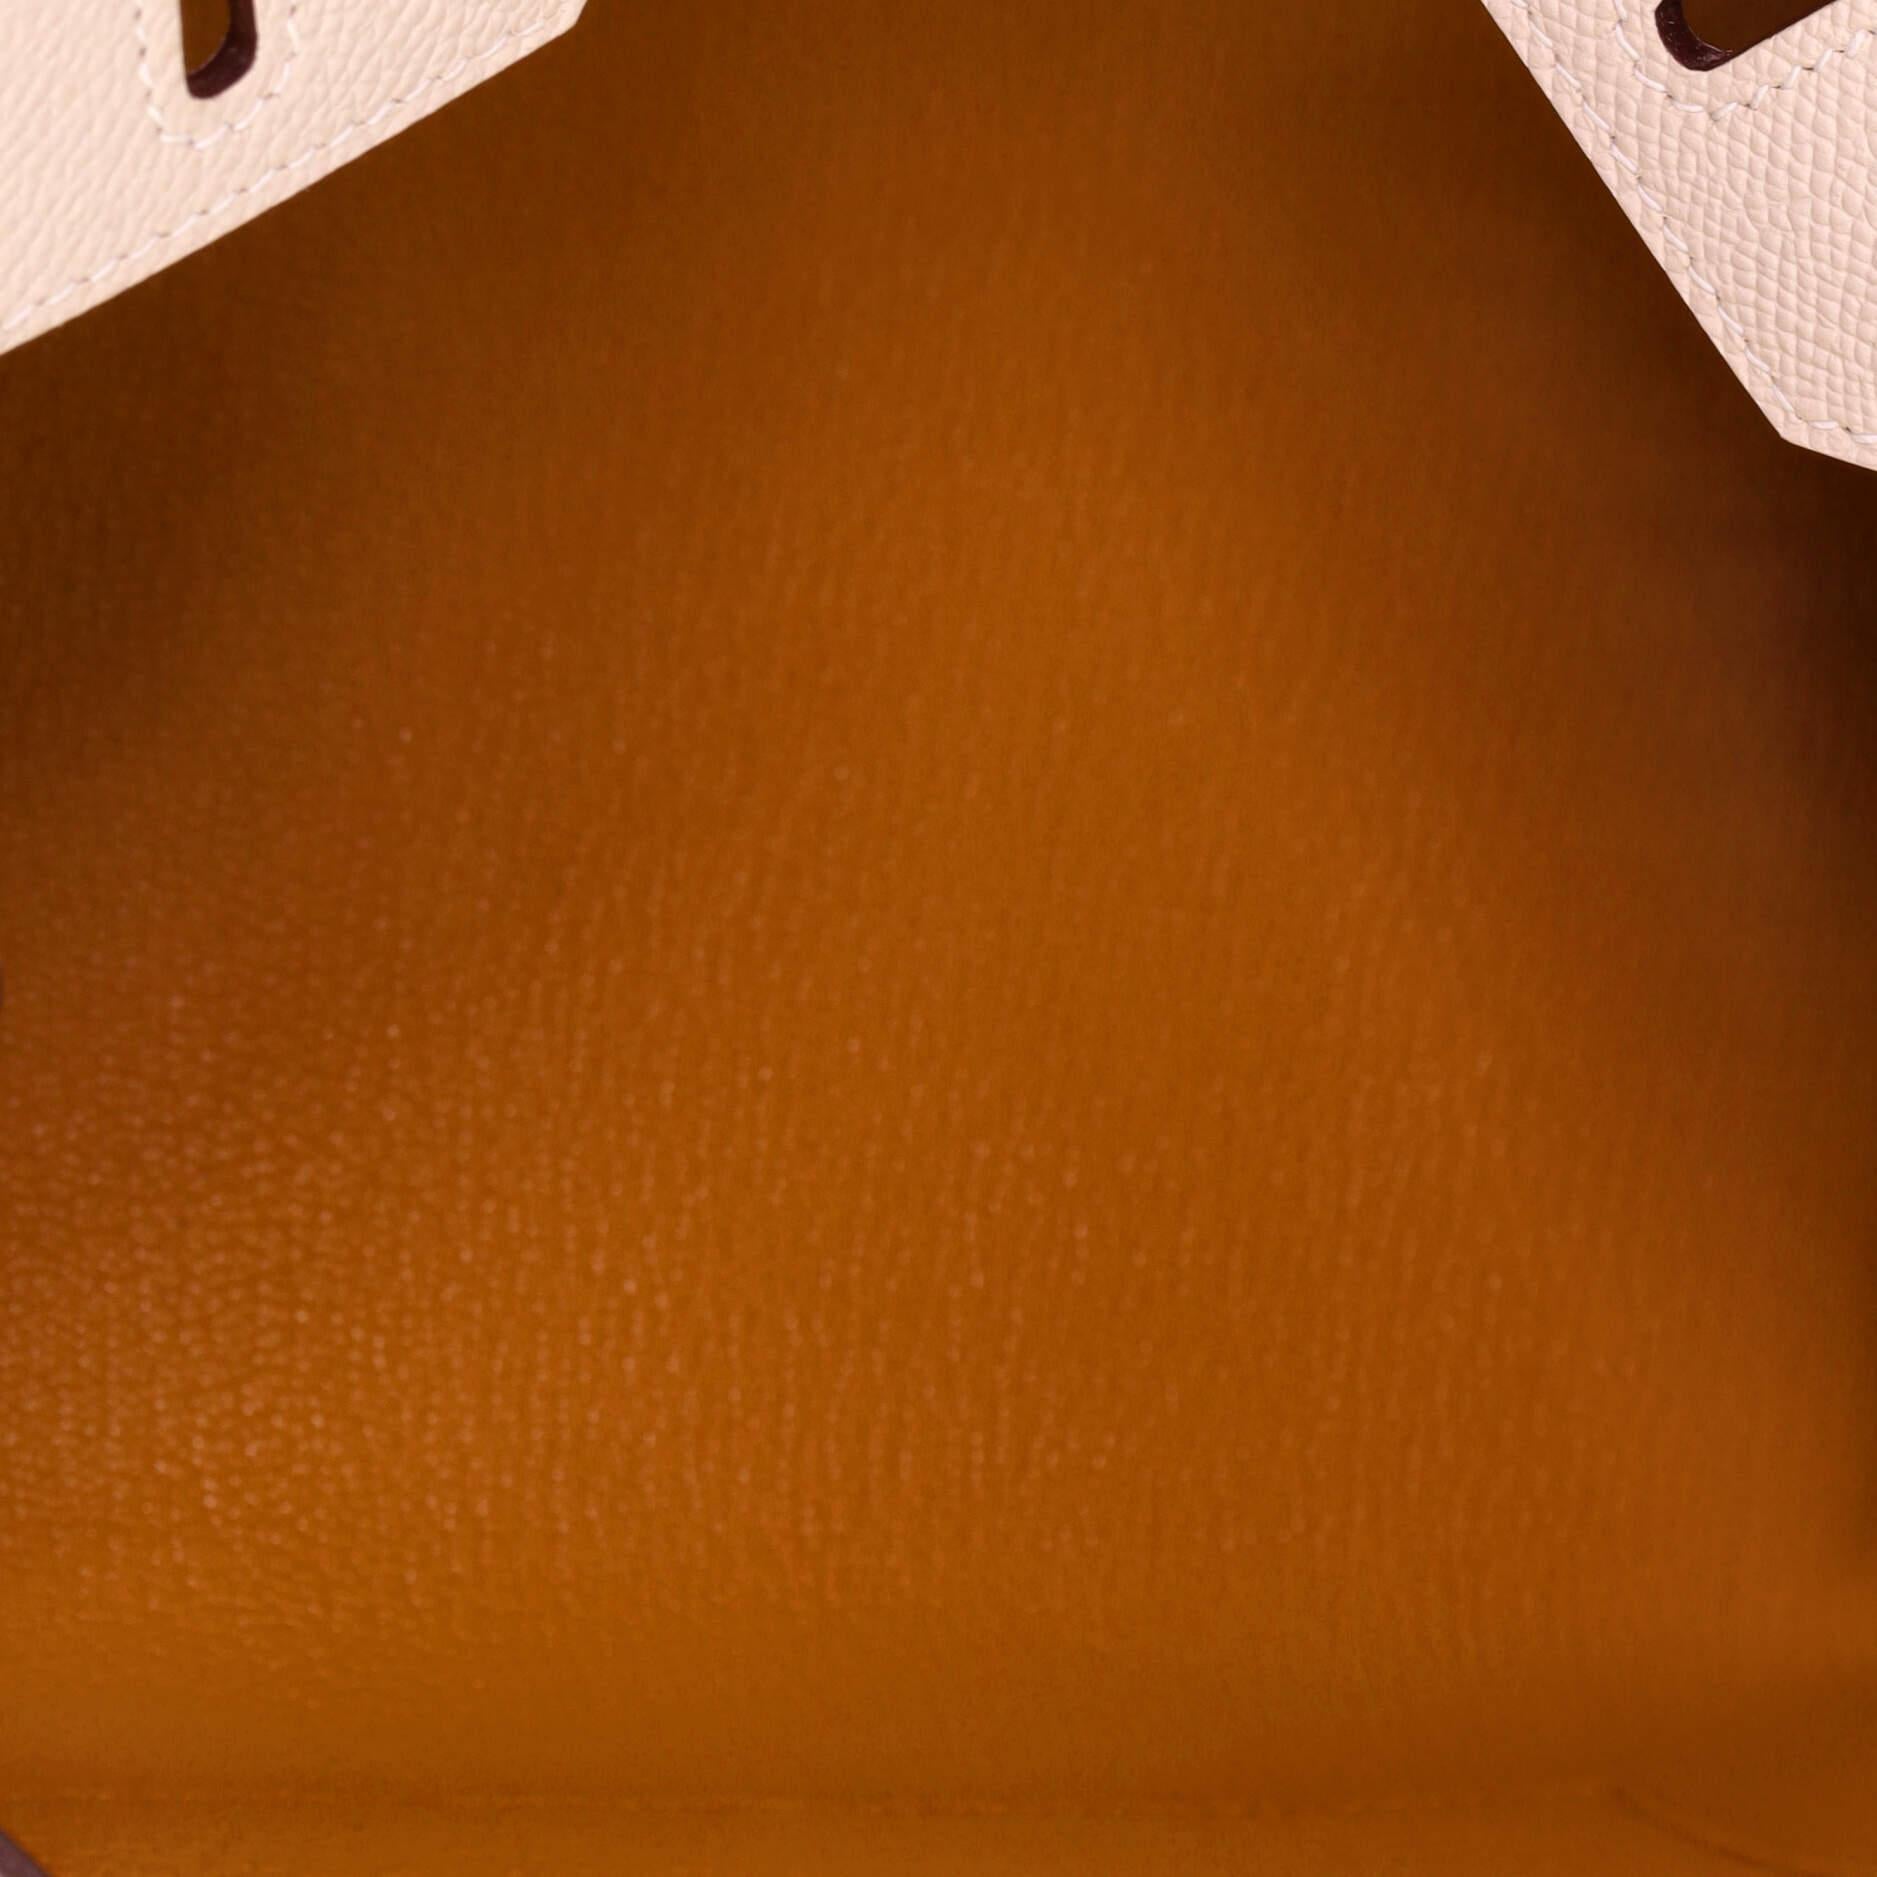 White Hermes Birkin Sellier Bag Bicolor Epsom with Brushed Gold Hardware 25